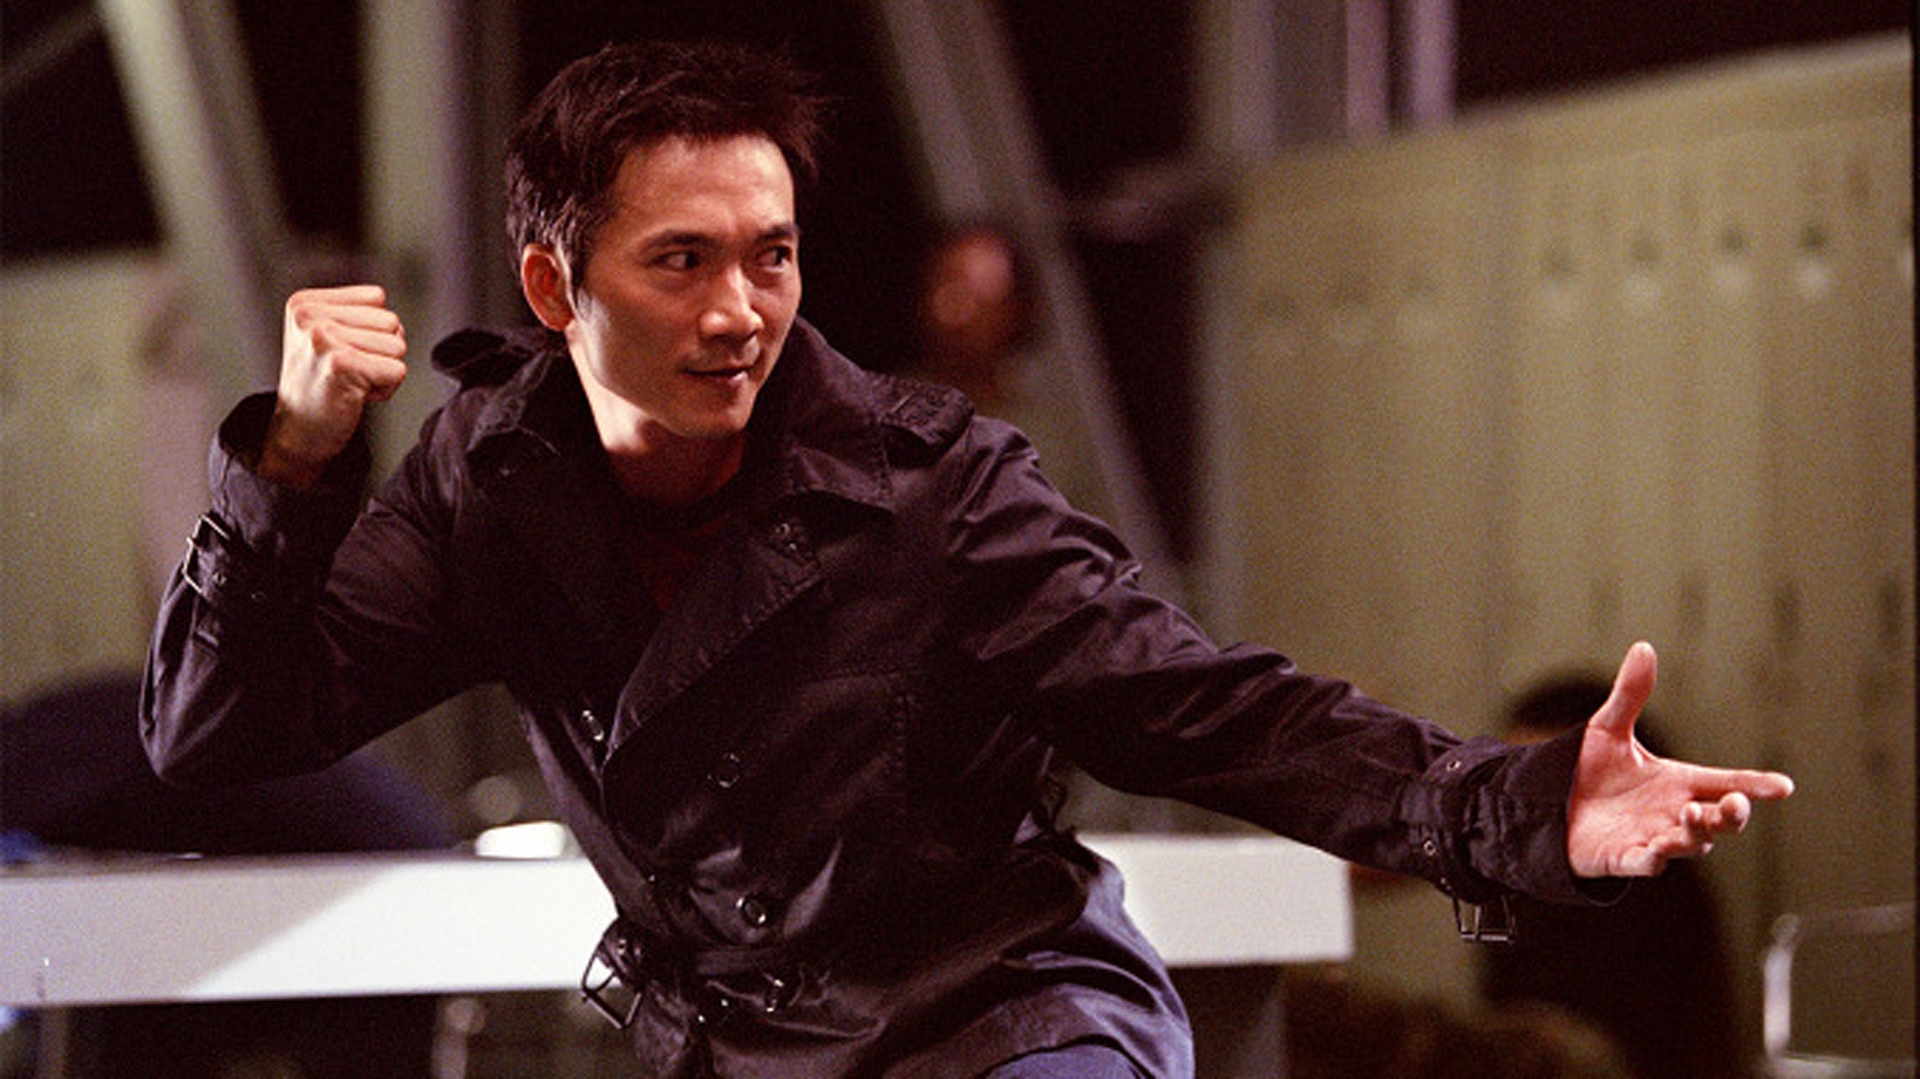 几乎在很多动作电影中,有邹兆龙参演的作品,他饰演的几乎都是一个反派